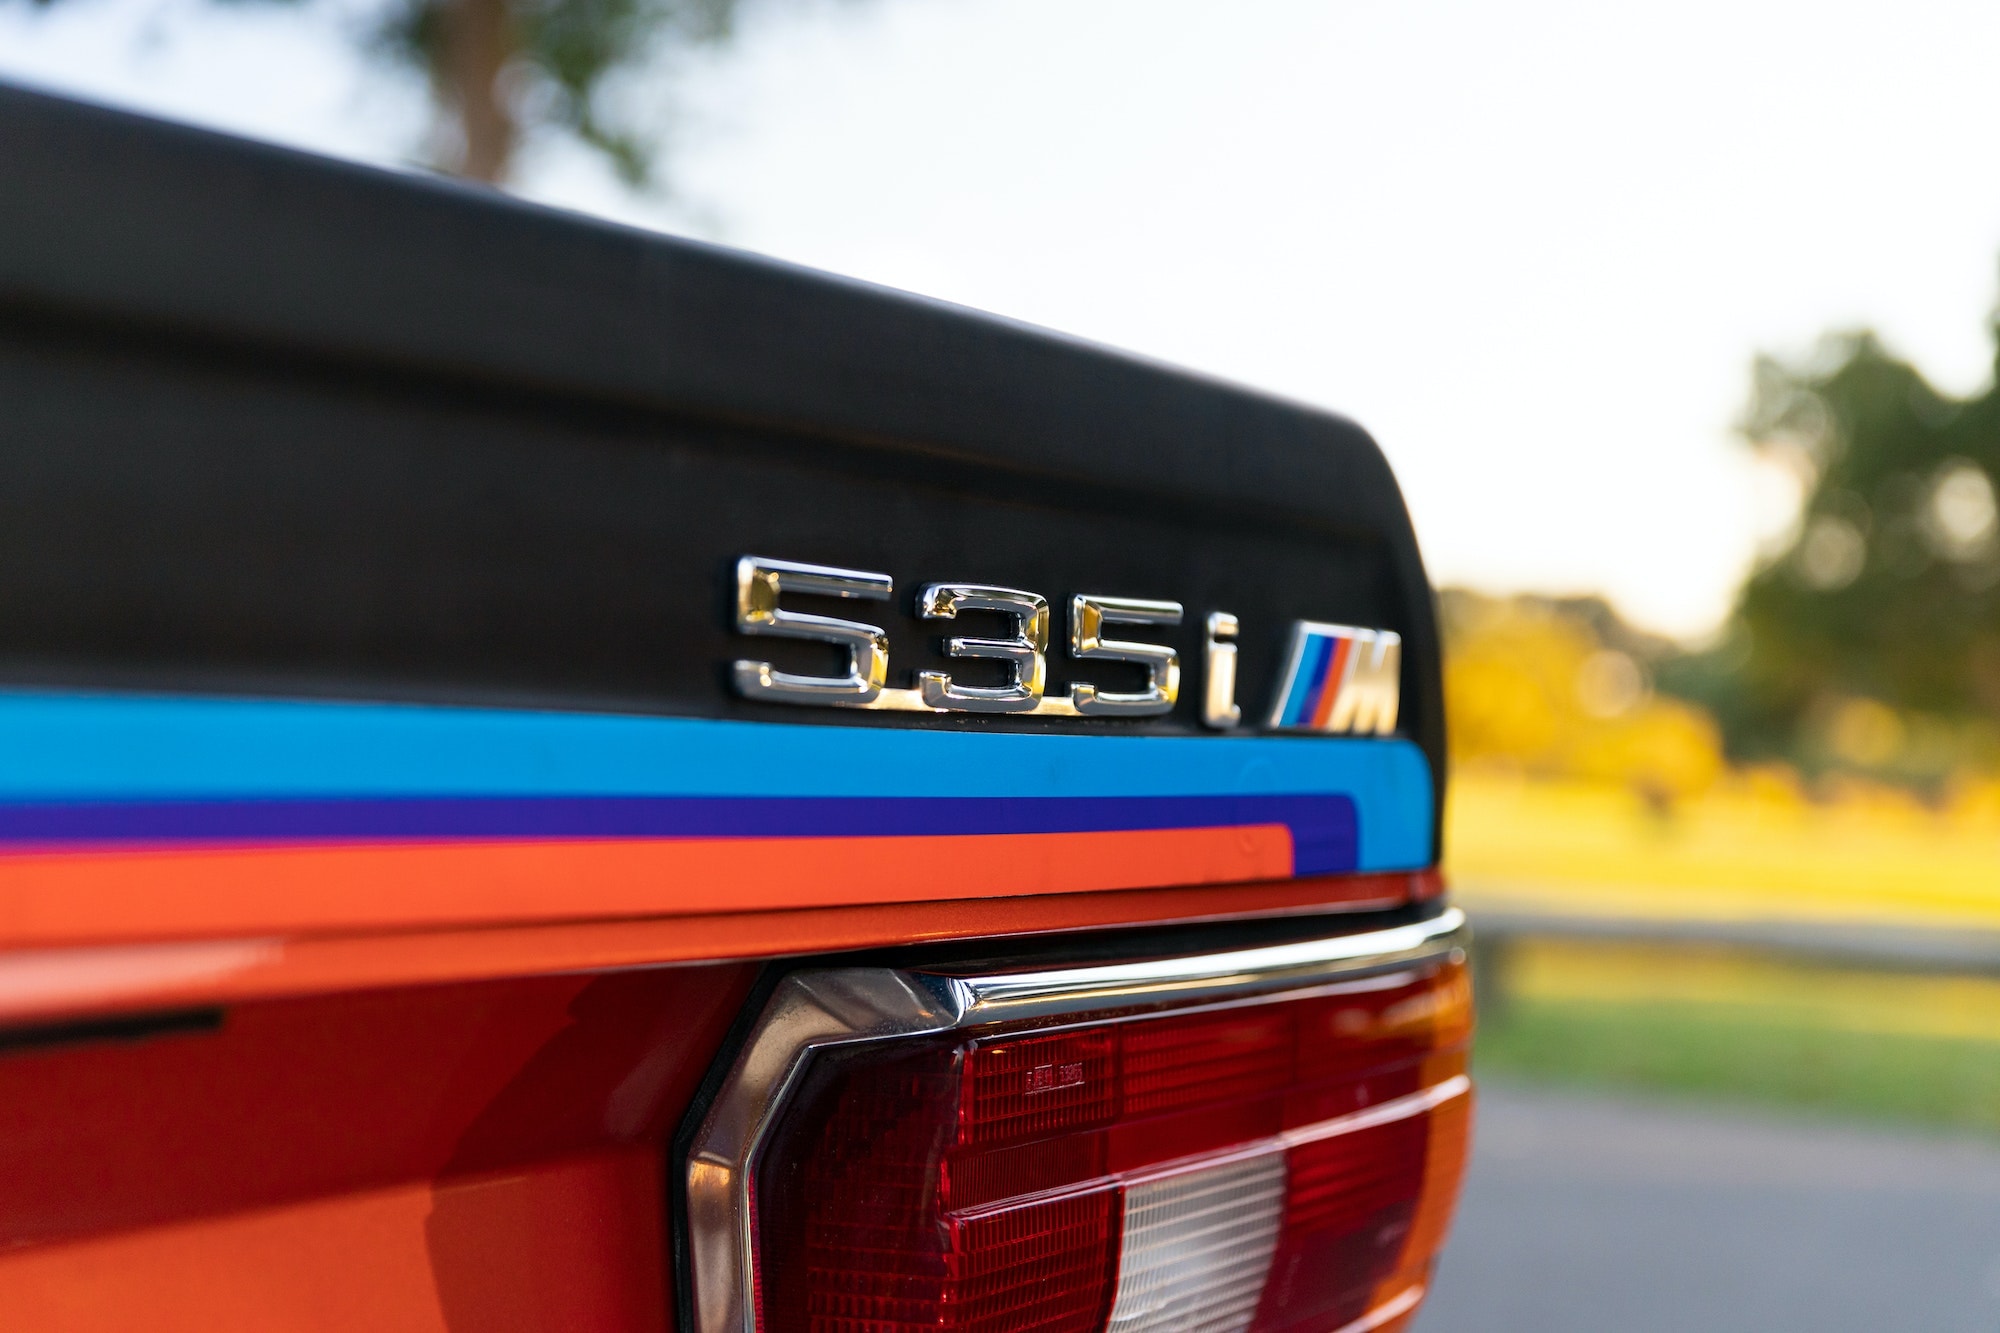 稀有 1981 年式樣 BMW E12 M535i 車款展開拍賣